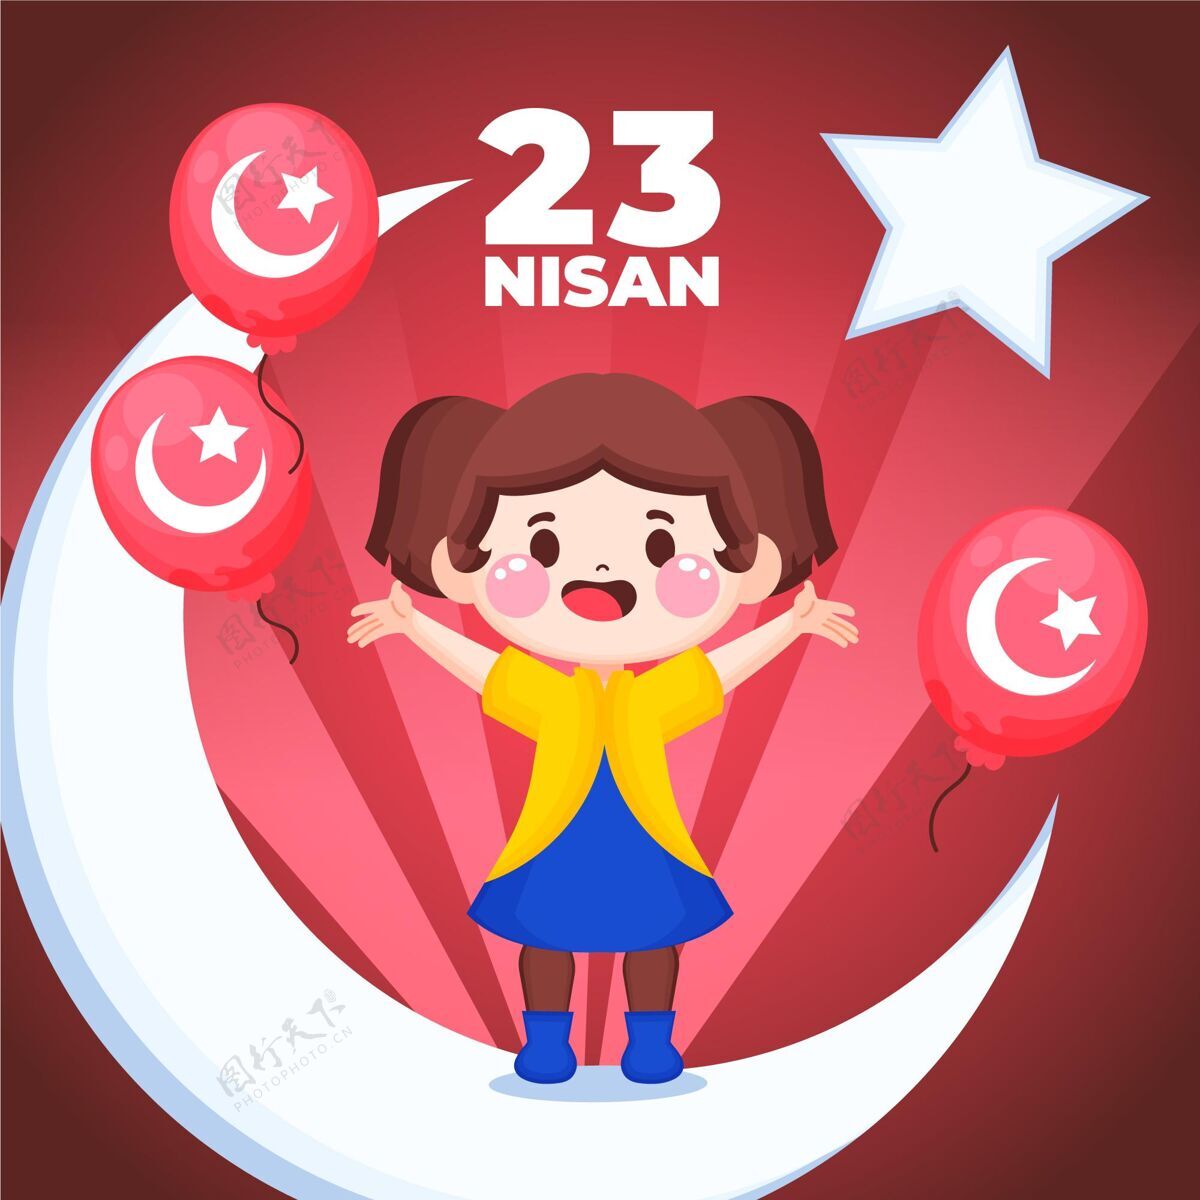 4月23日手绘23尼桑插图土耳其公共假日国旗